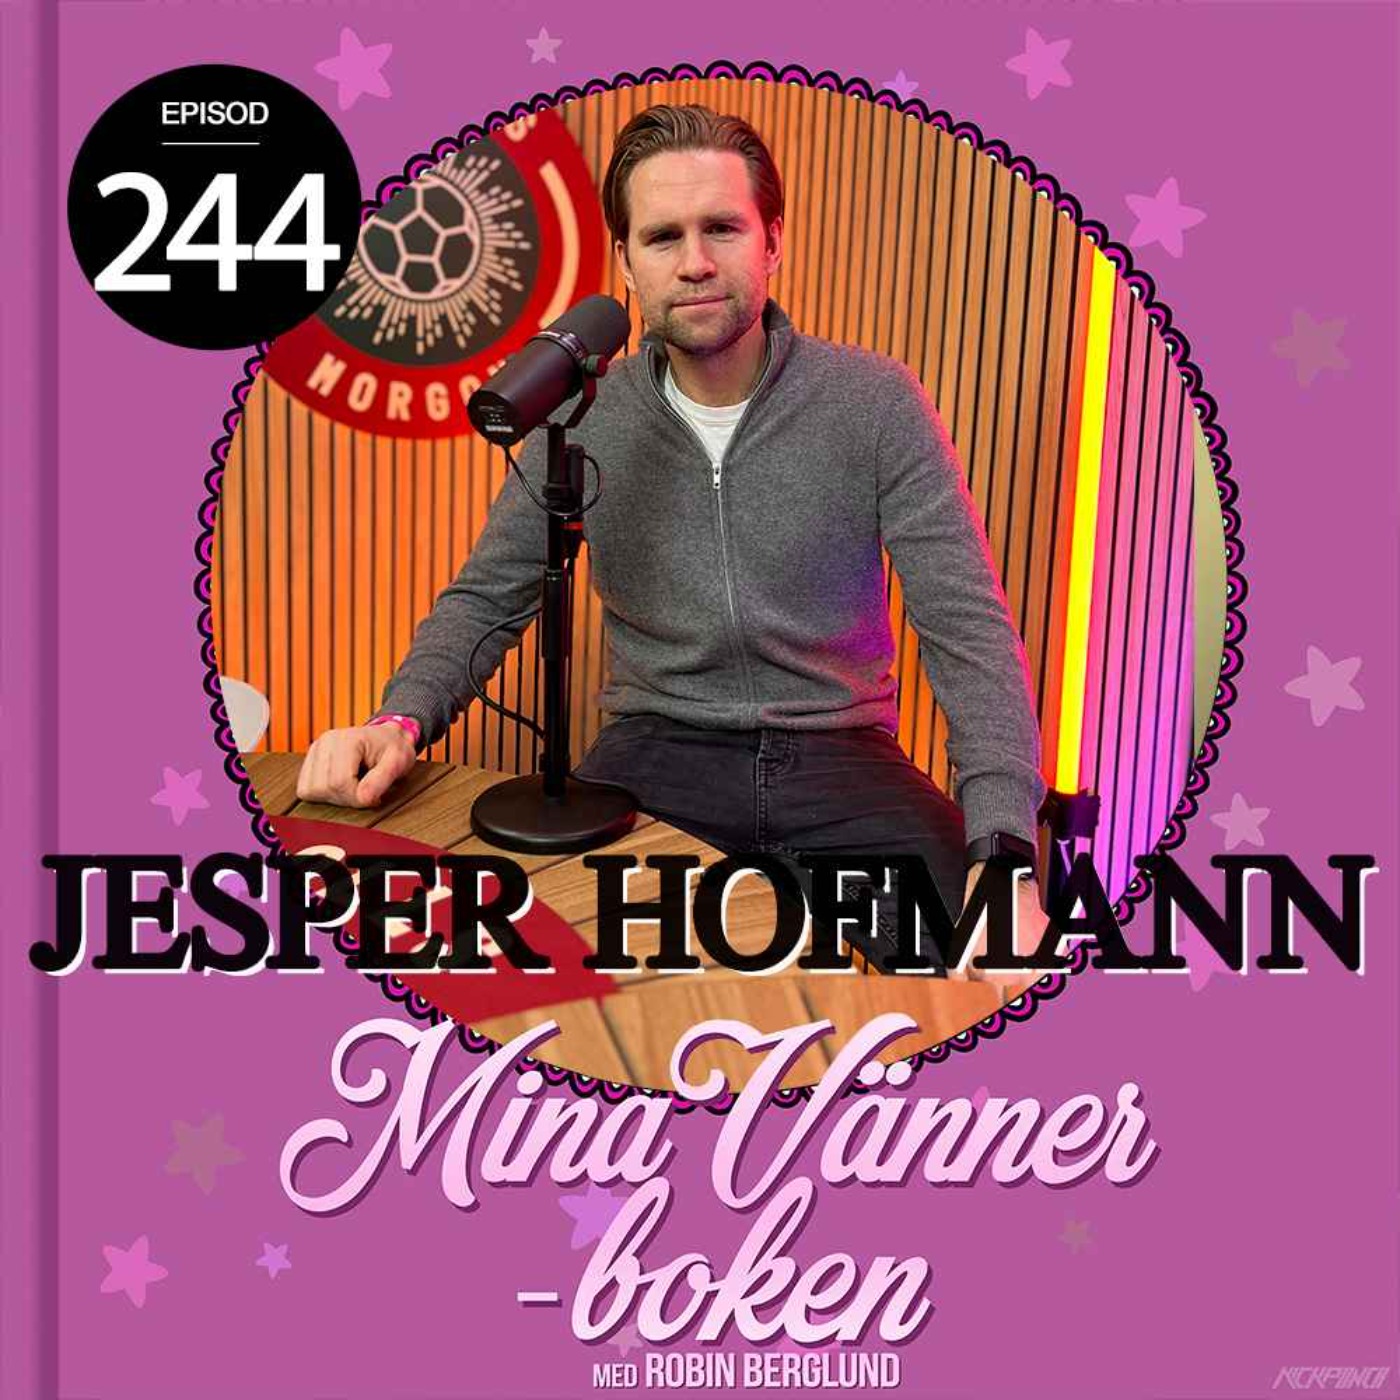 Jesper Hofmann